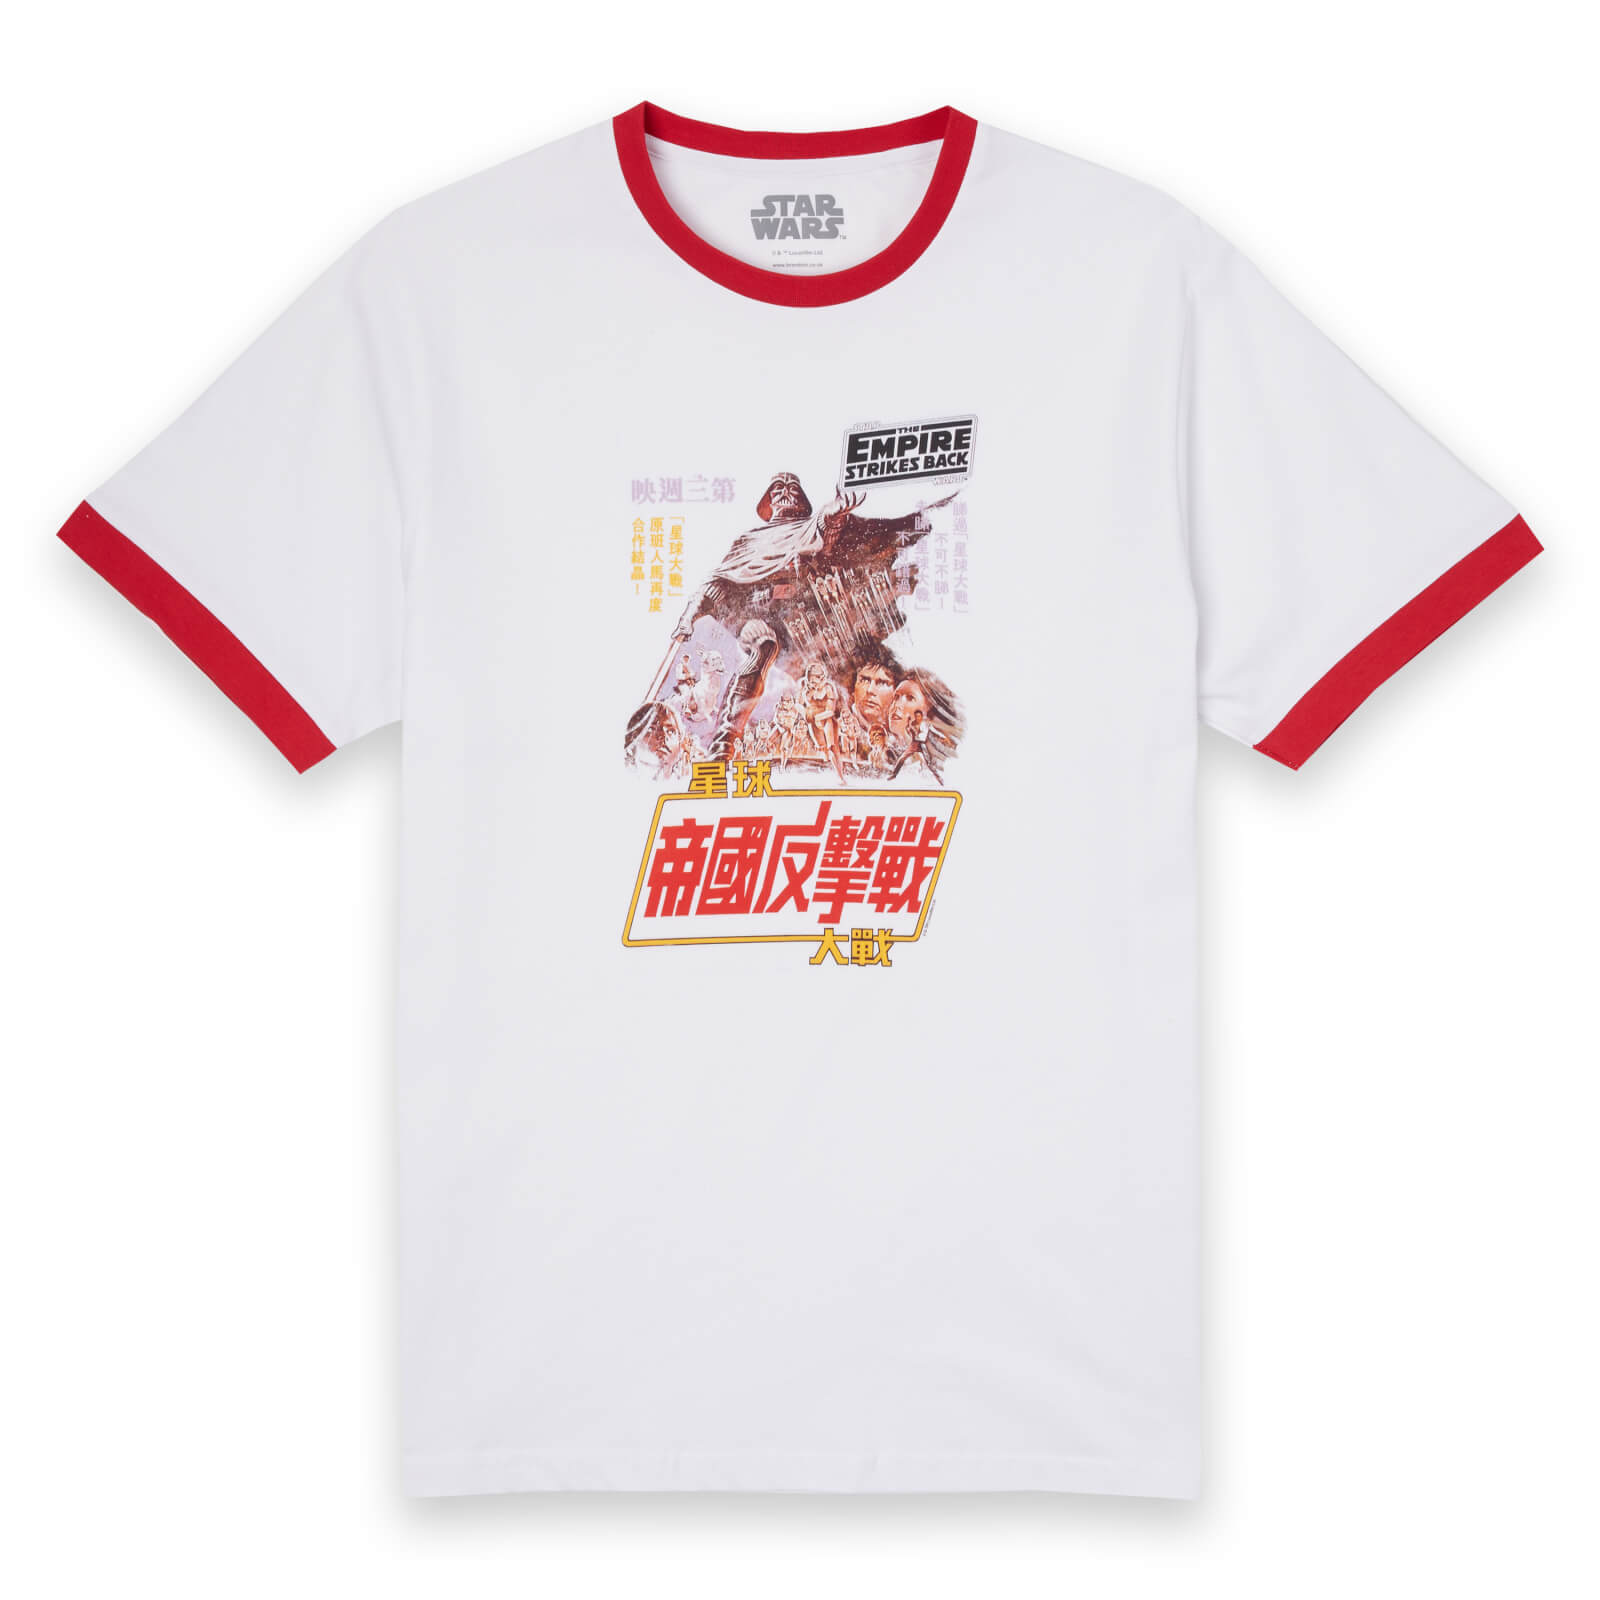 Star Wars Empire Strikes Back Kanji Poster ringer t-shirt - Wit/Rood - L